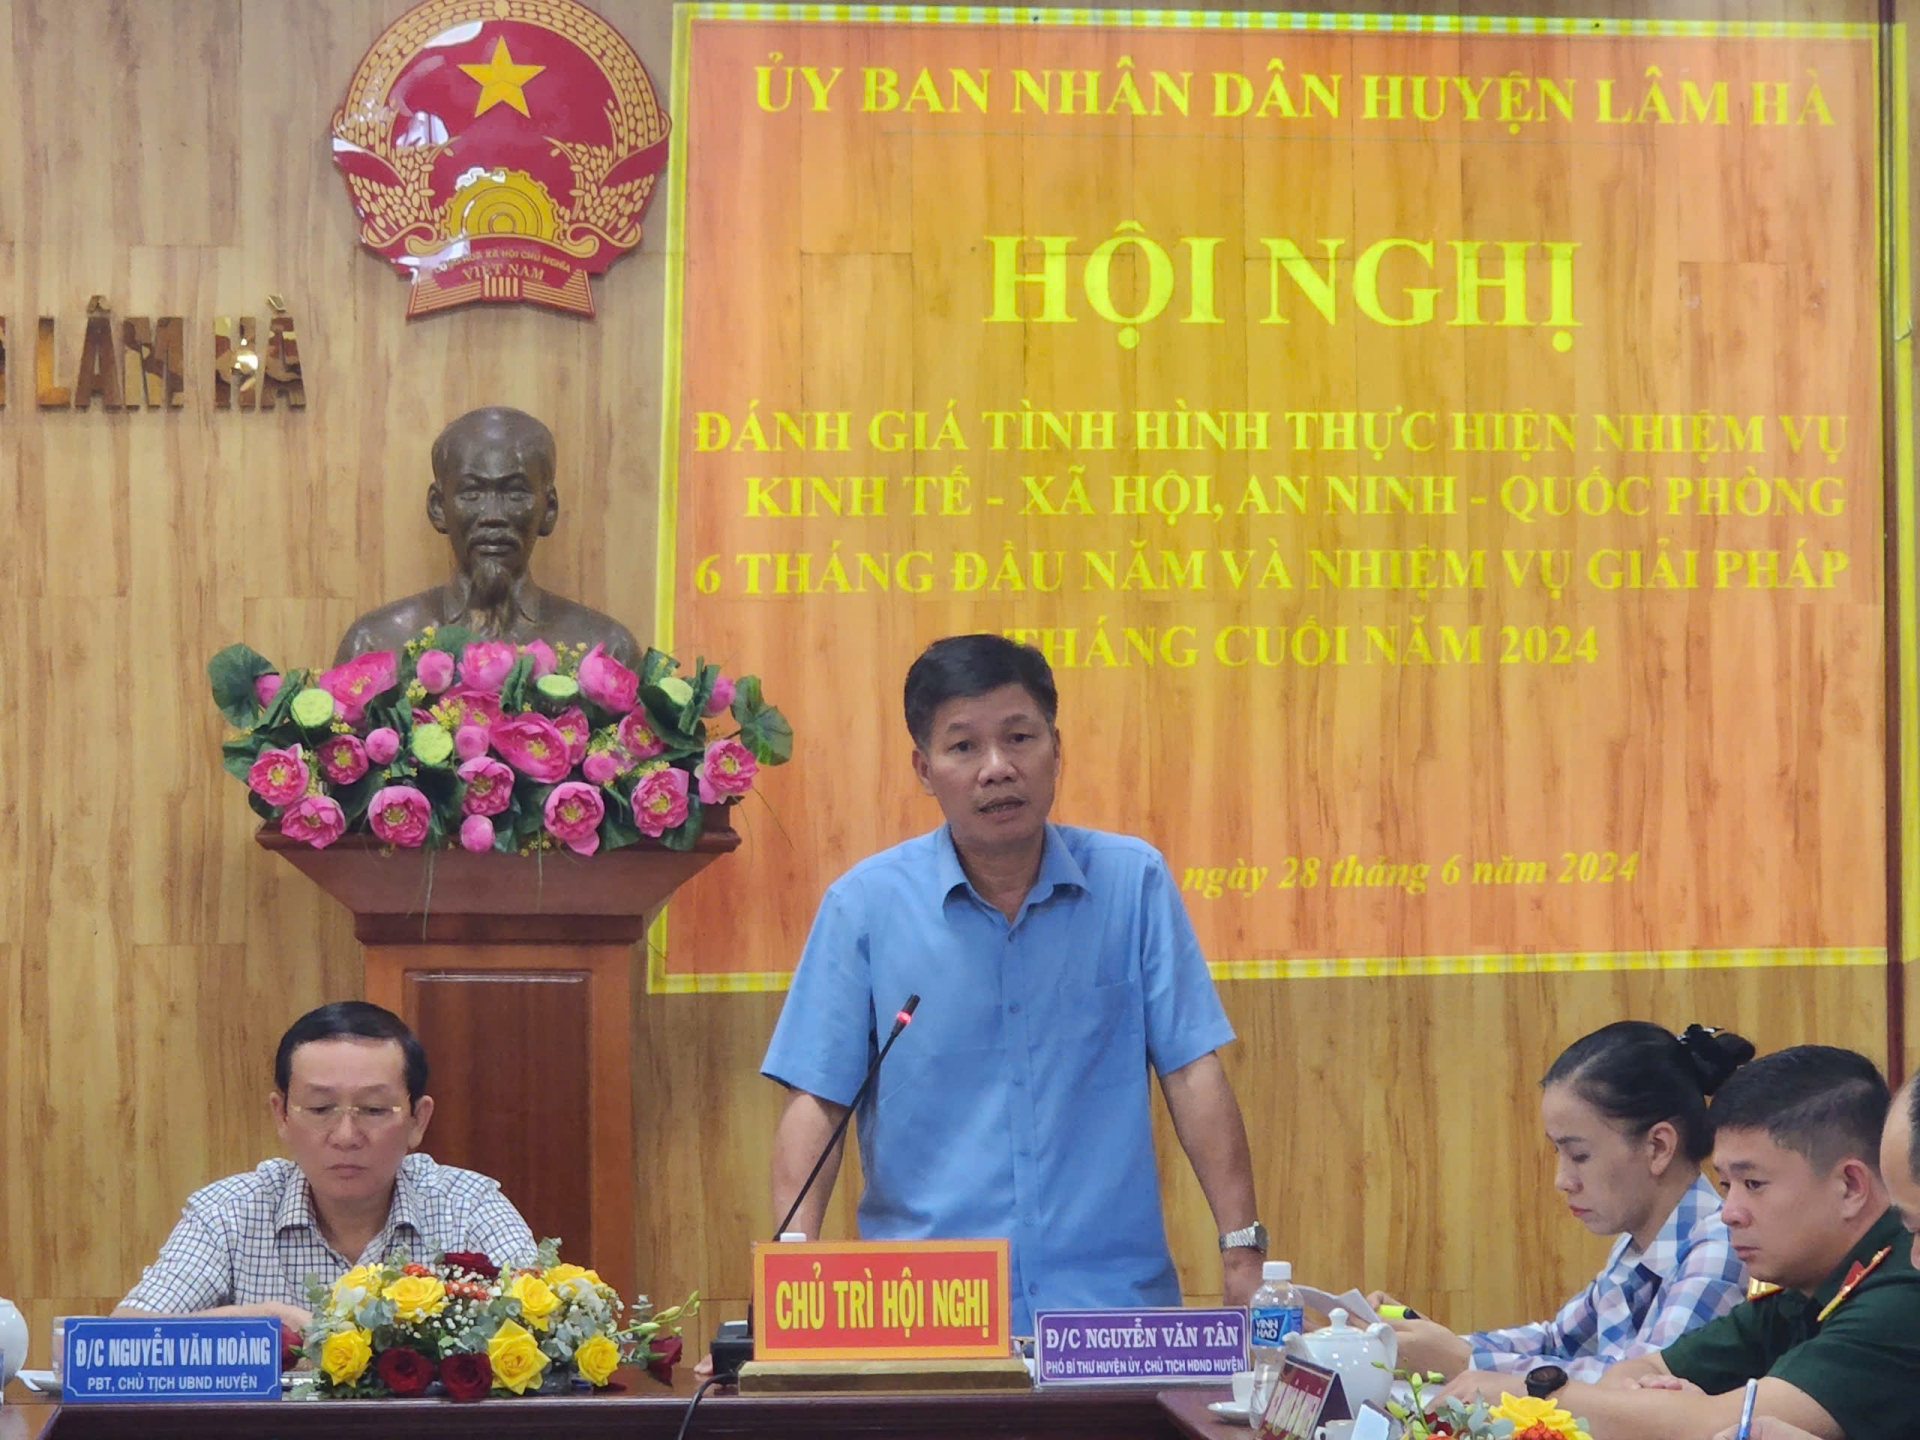 Đồng chí Nguyễn Văn Tân - Phó Bí thư Thường trực Huyện ủy phát biểu tại hội nghị